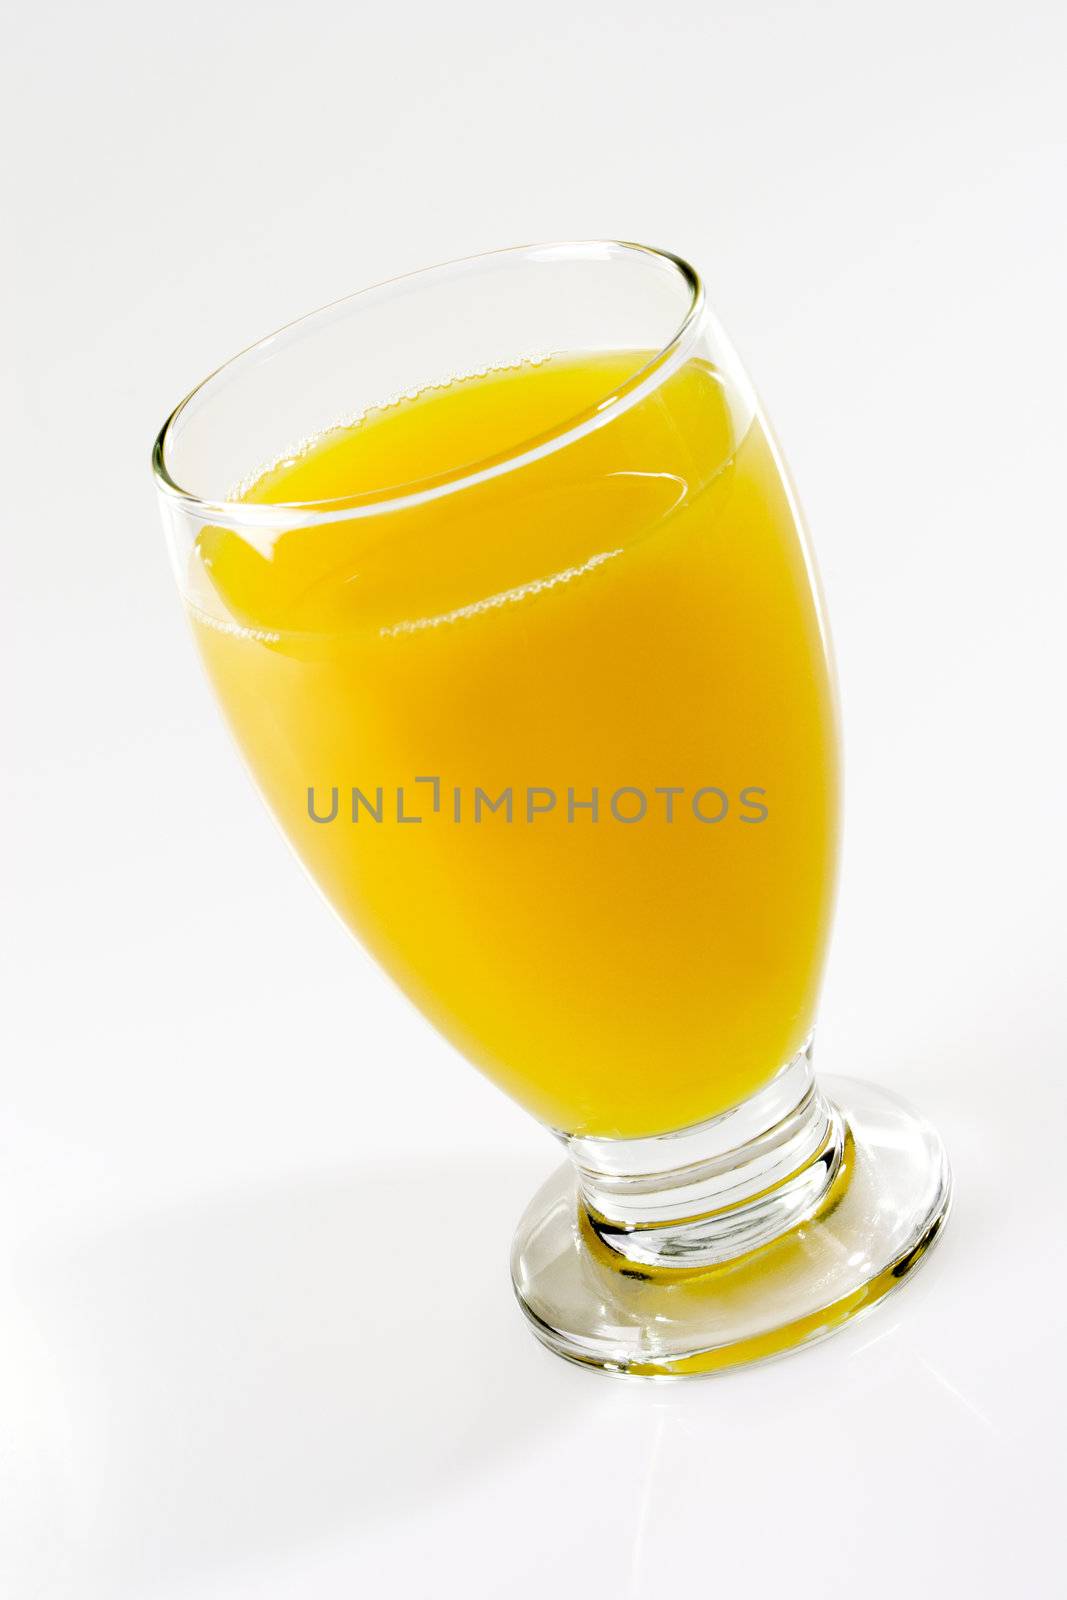 Juice of Oranges by Teamarbeit